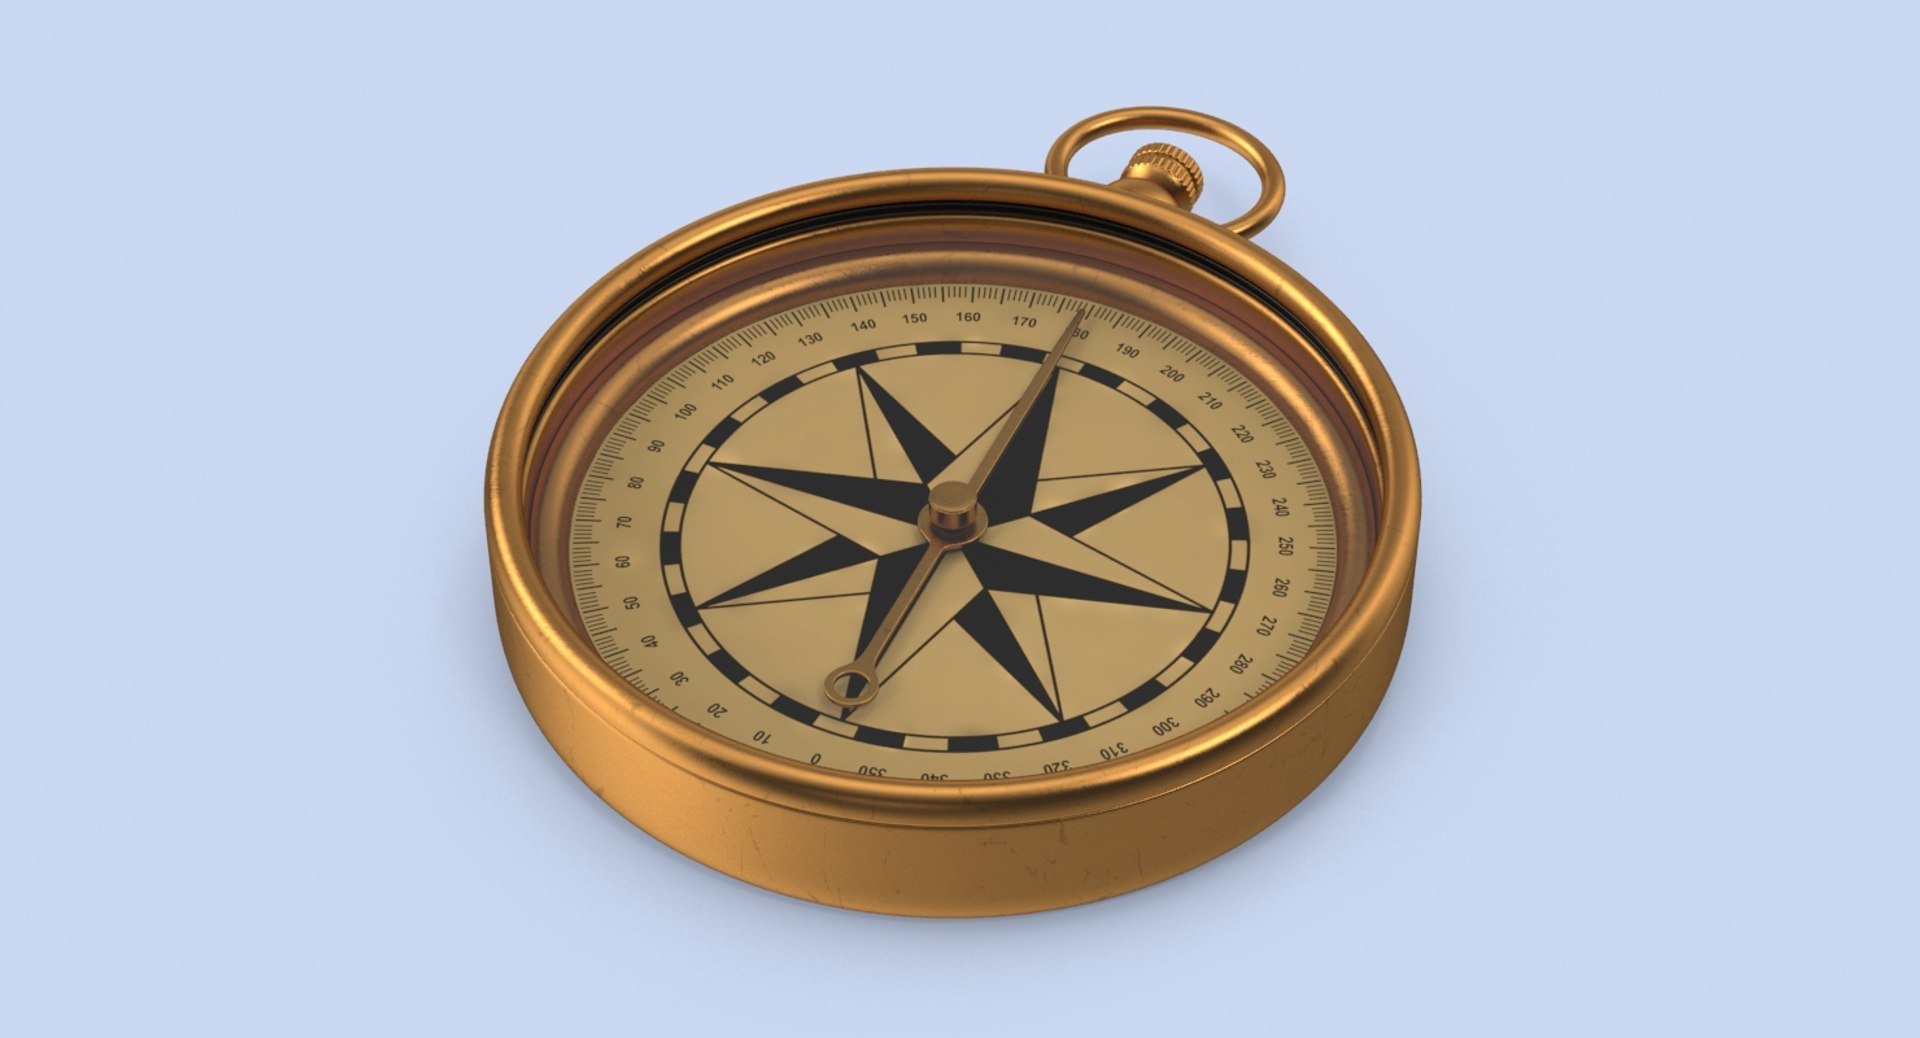 Показать географический компас. Старинный компас. Морской компас. Компас с крышкой старинный. Компас красивый.